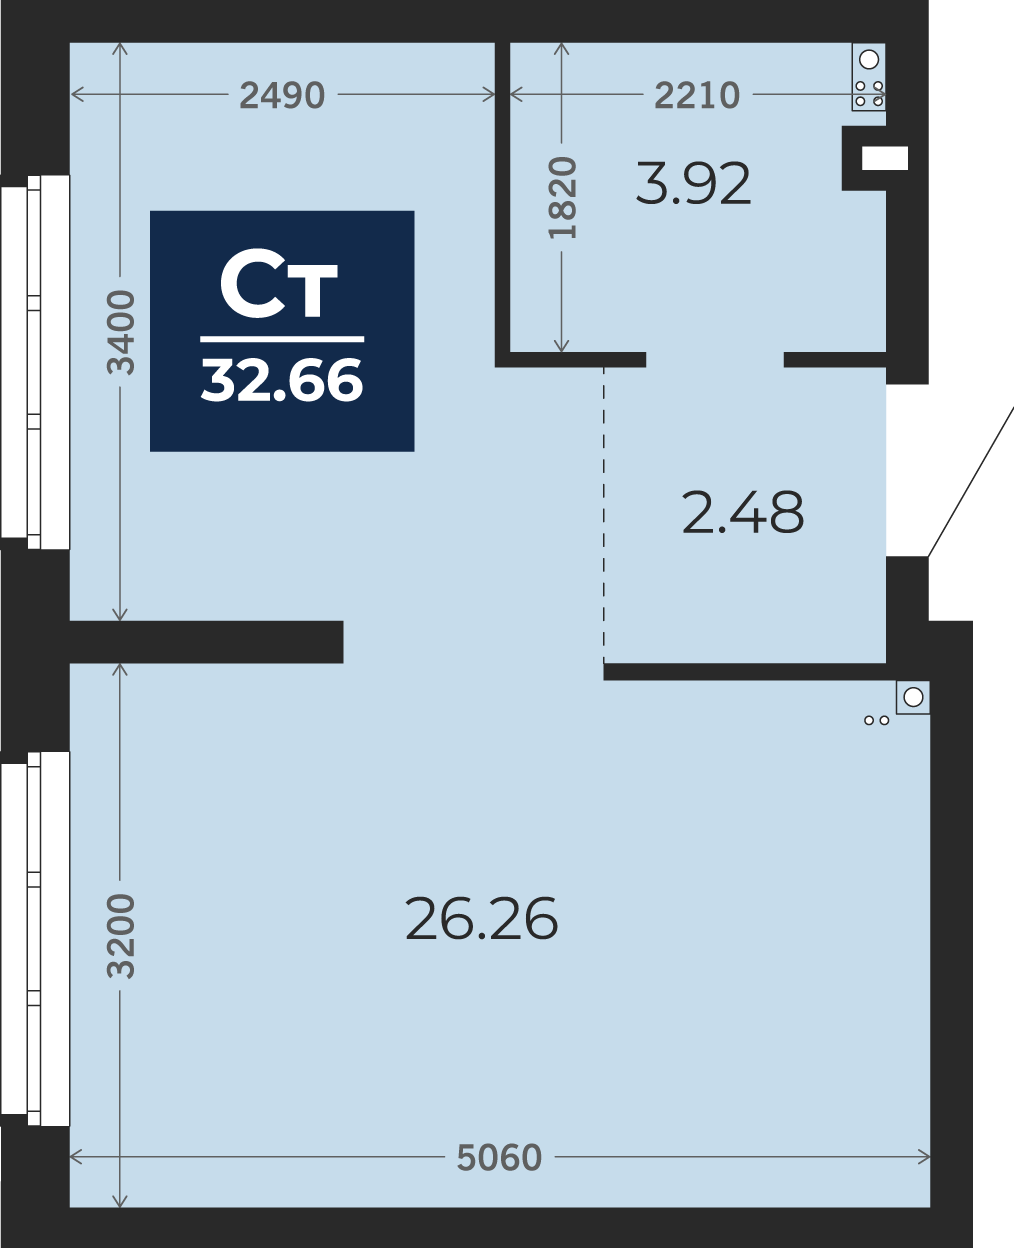 Квартира № 68, Студия, 32.66 кв. м, 1 этаж